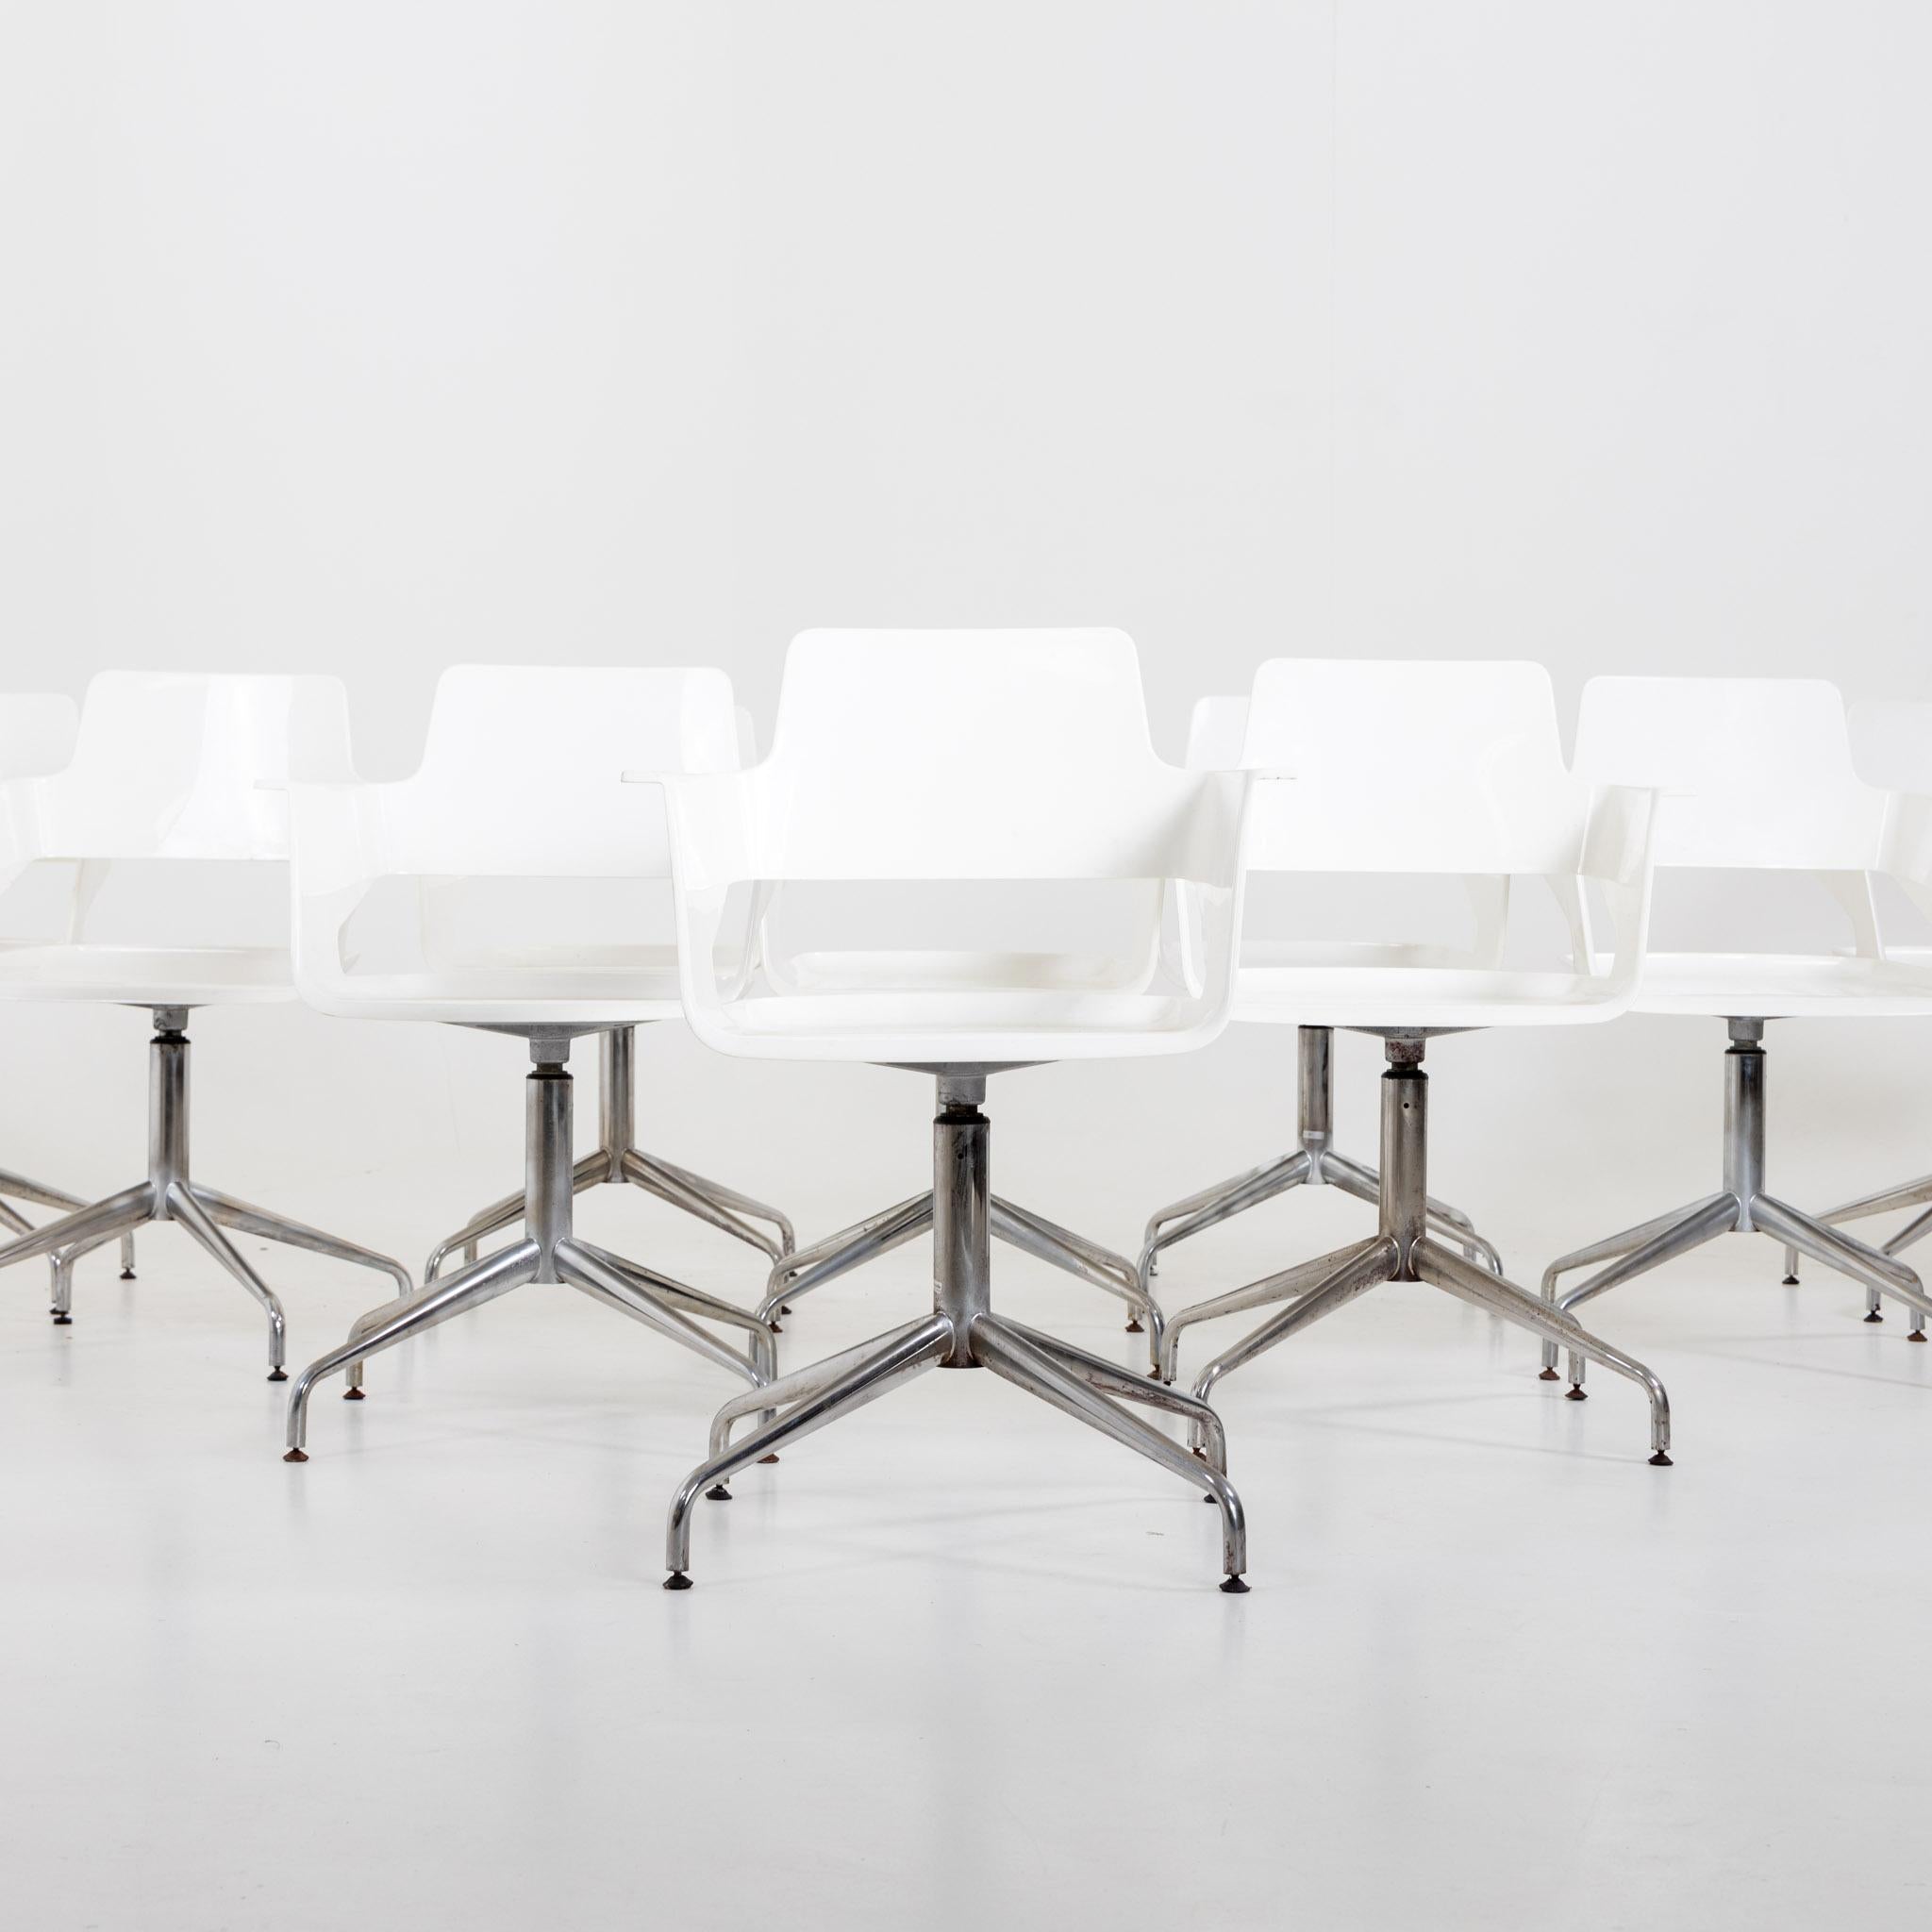 Ensemble de dix chaises de bureau sur pieds métalliques et coques d'assise blanches avec accoudoirs. Les chaises présentent un design moderne avec des pieds métalliques élégants et des coques d'assise ergonomiques blanches, offrant à la fois style